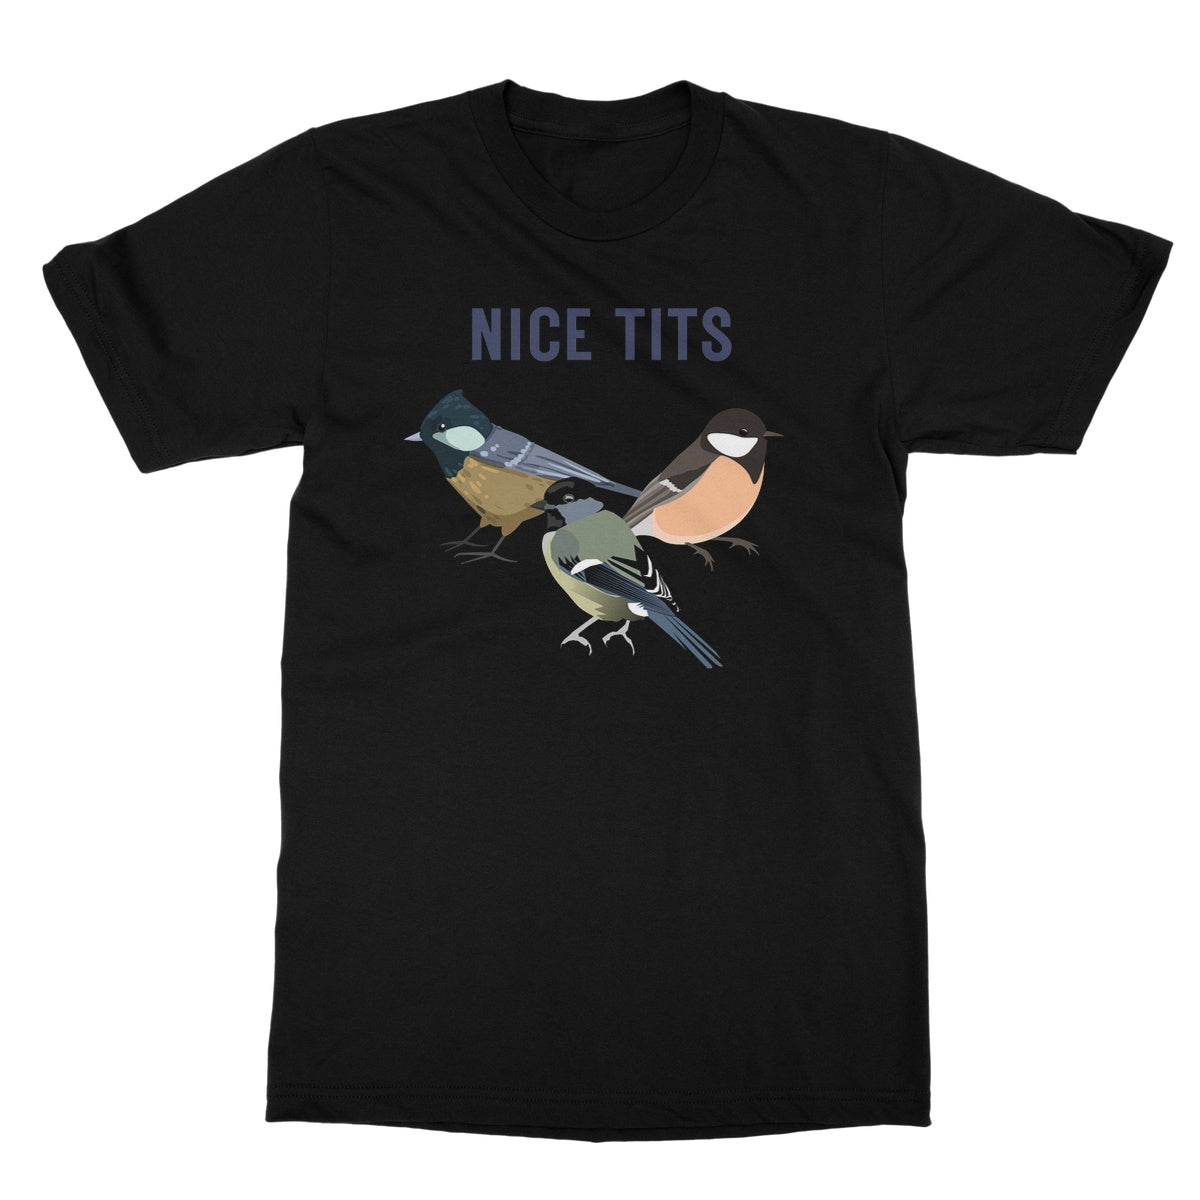 nice tits t shirt black